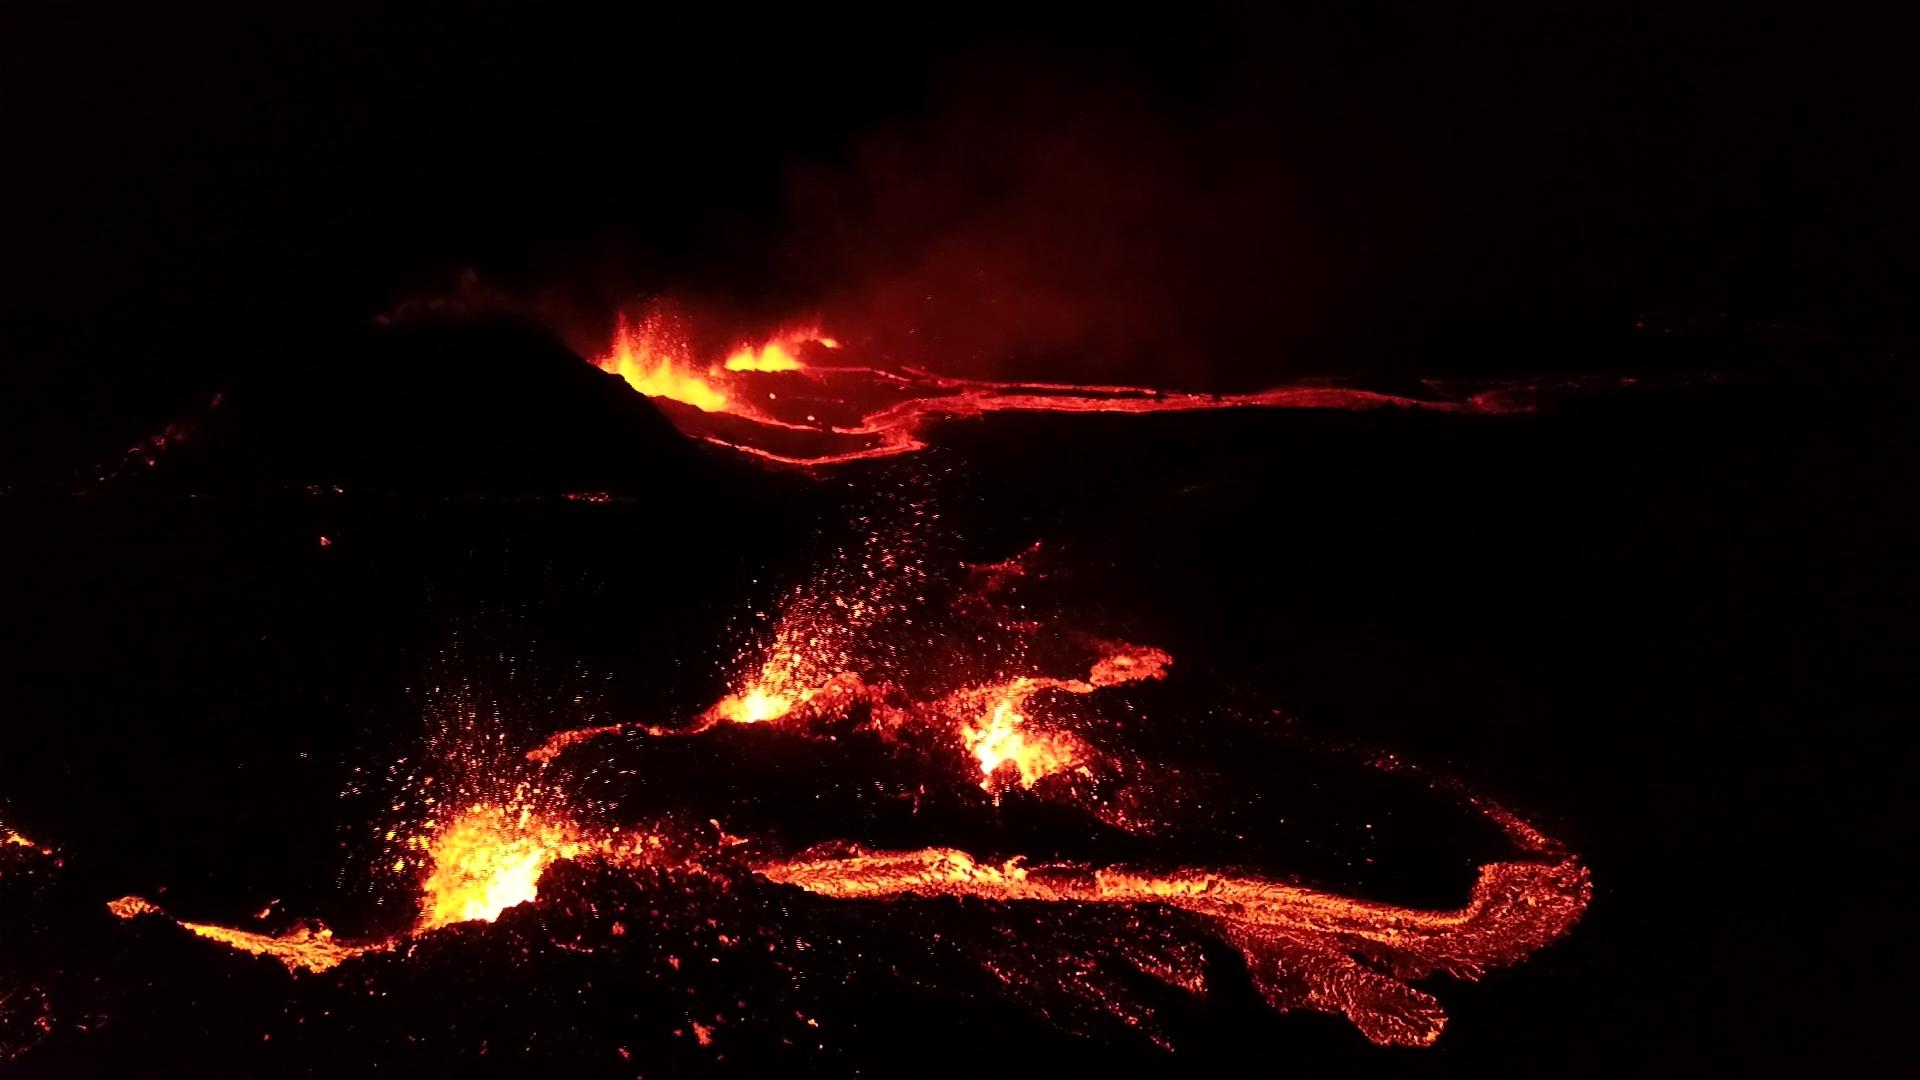 Les volcans de la Polynésie et de l'île de la Réunion au programme de Passion Outremer, ce dimanche sur France Ô